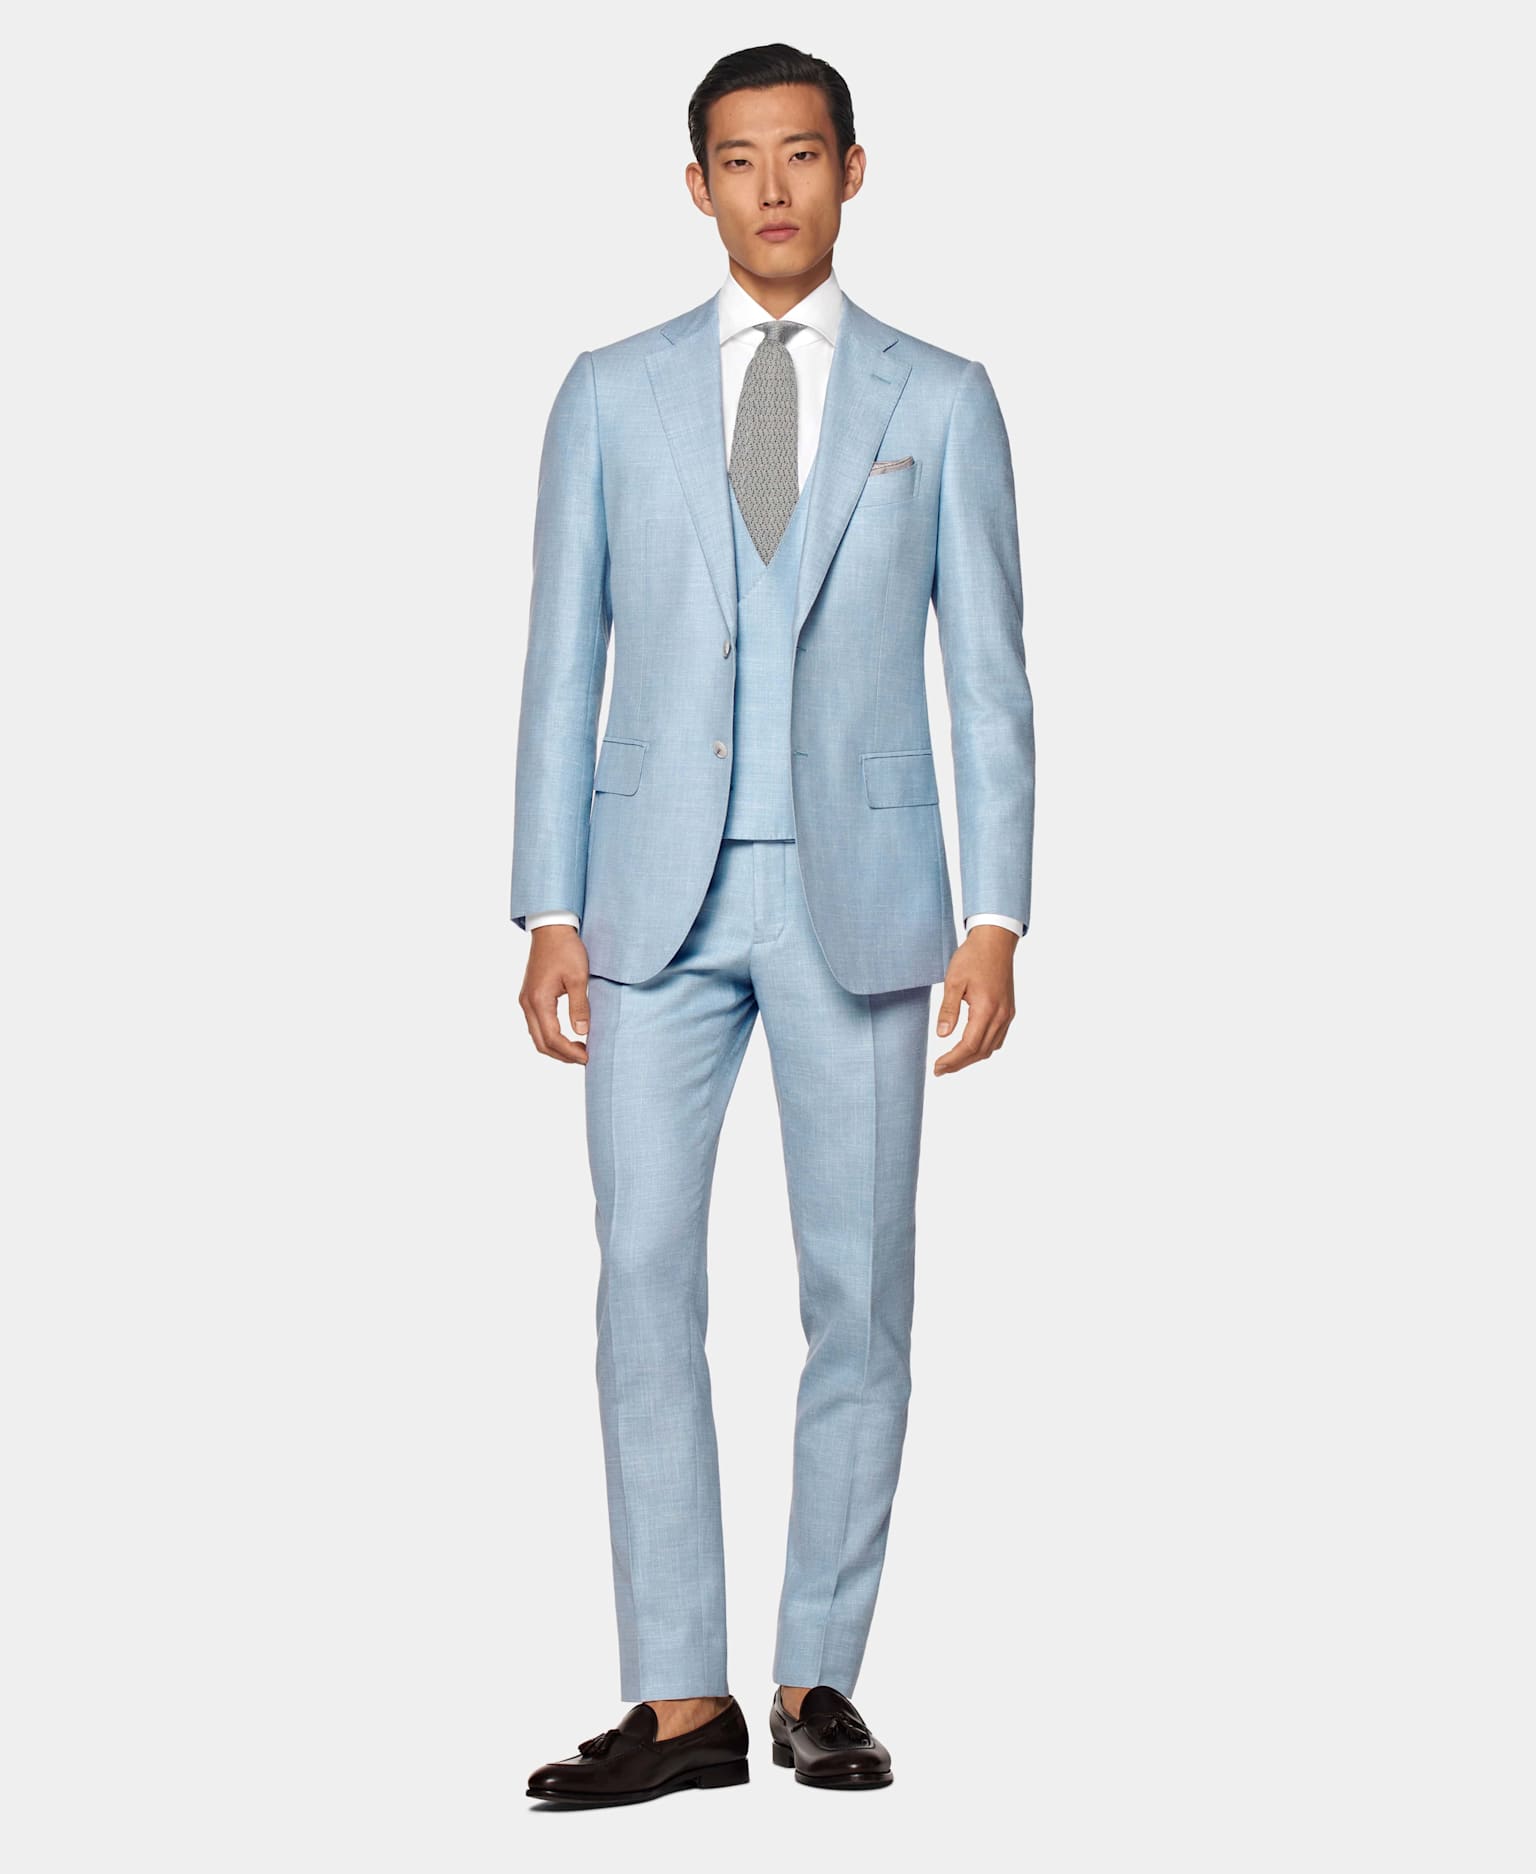 Hellblauer dreiteiliger Anzug, kombiniert mit weißem Hemd und grauer Krawatte aus Seidenstrick.